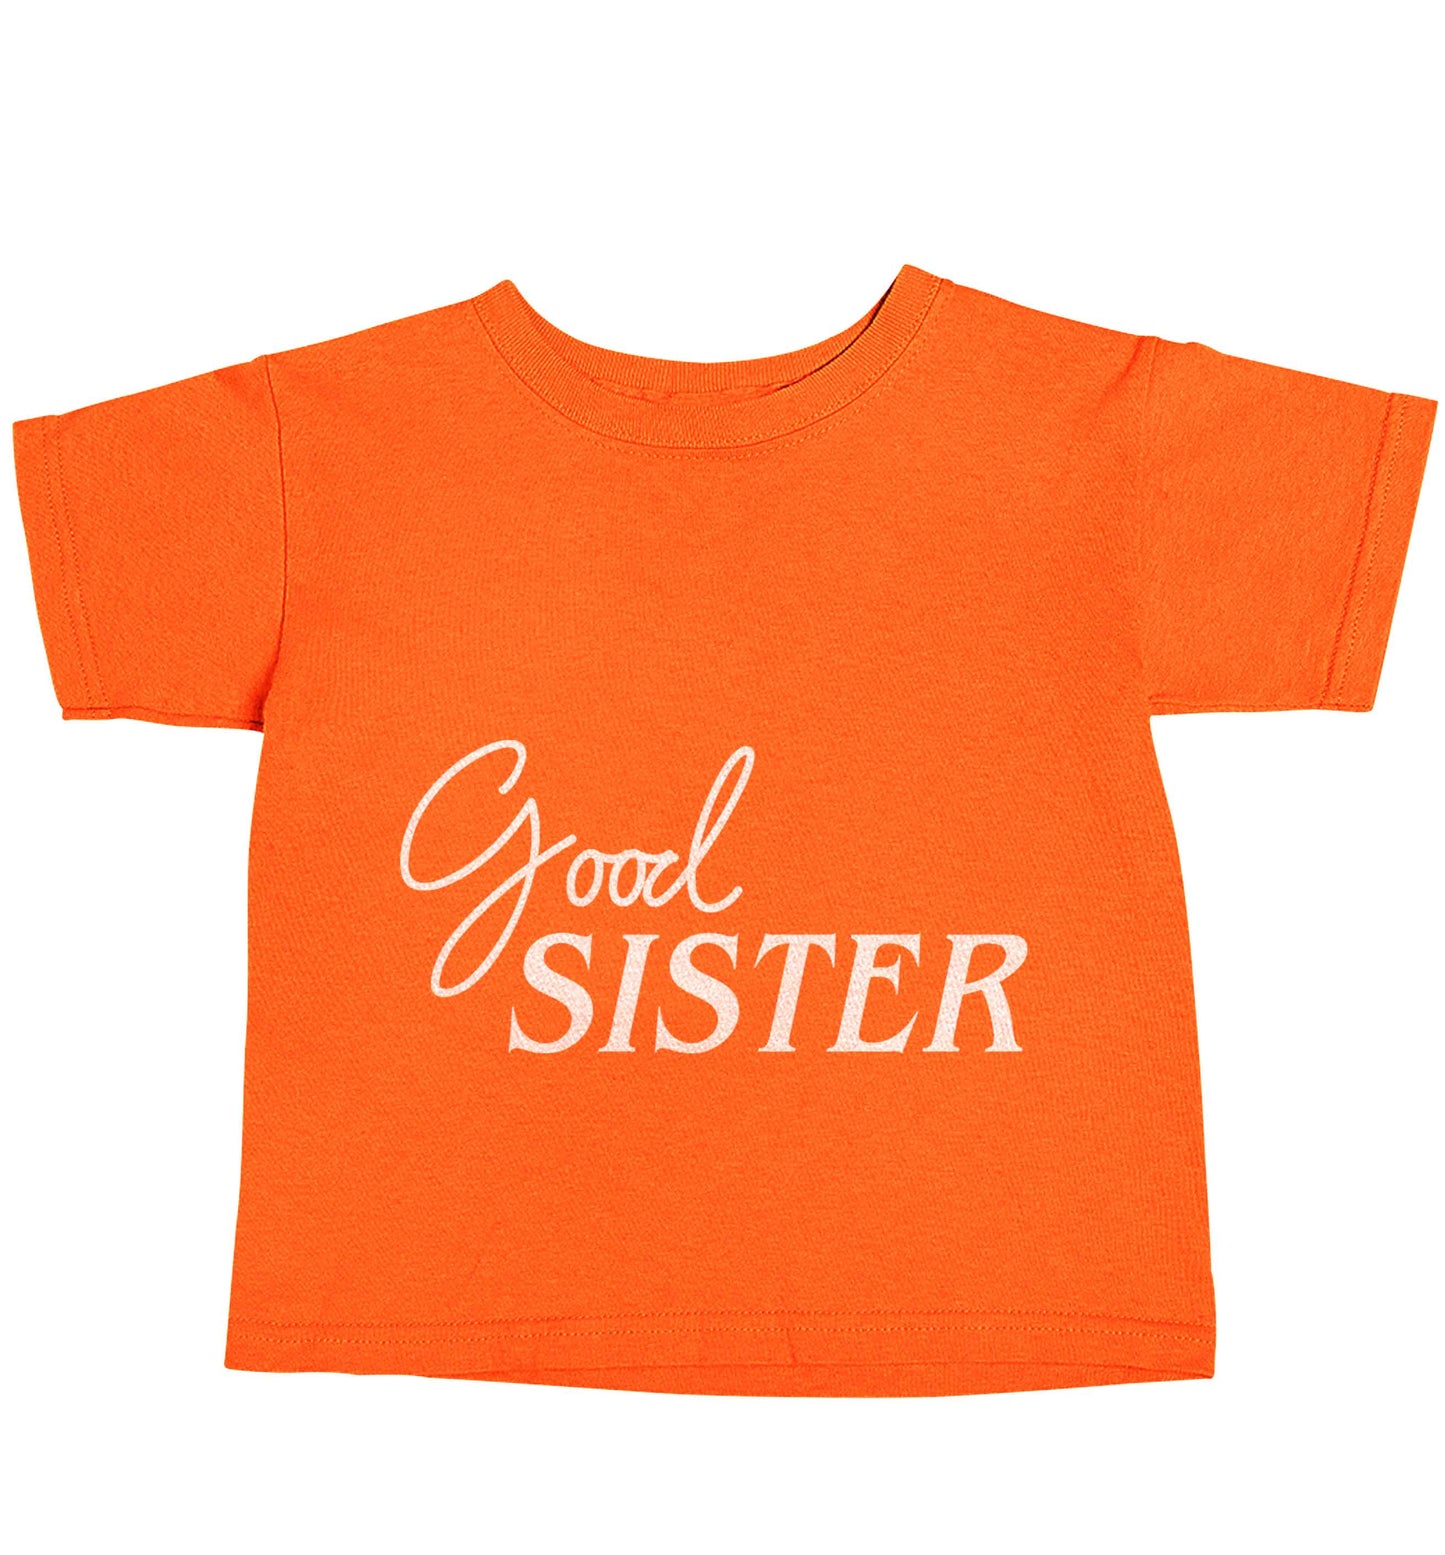 Good sister orange baby toddler Tshirt 2 Years